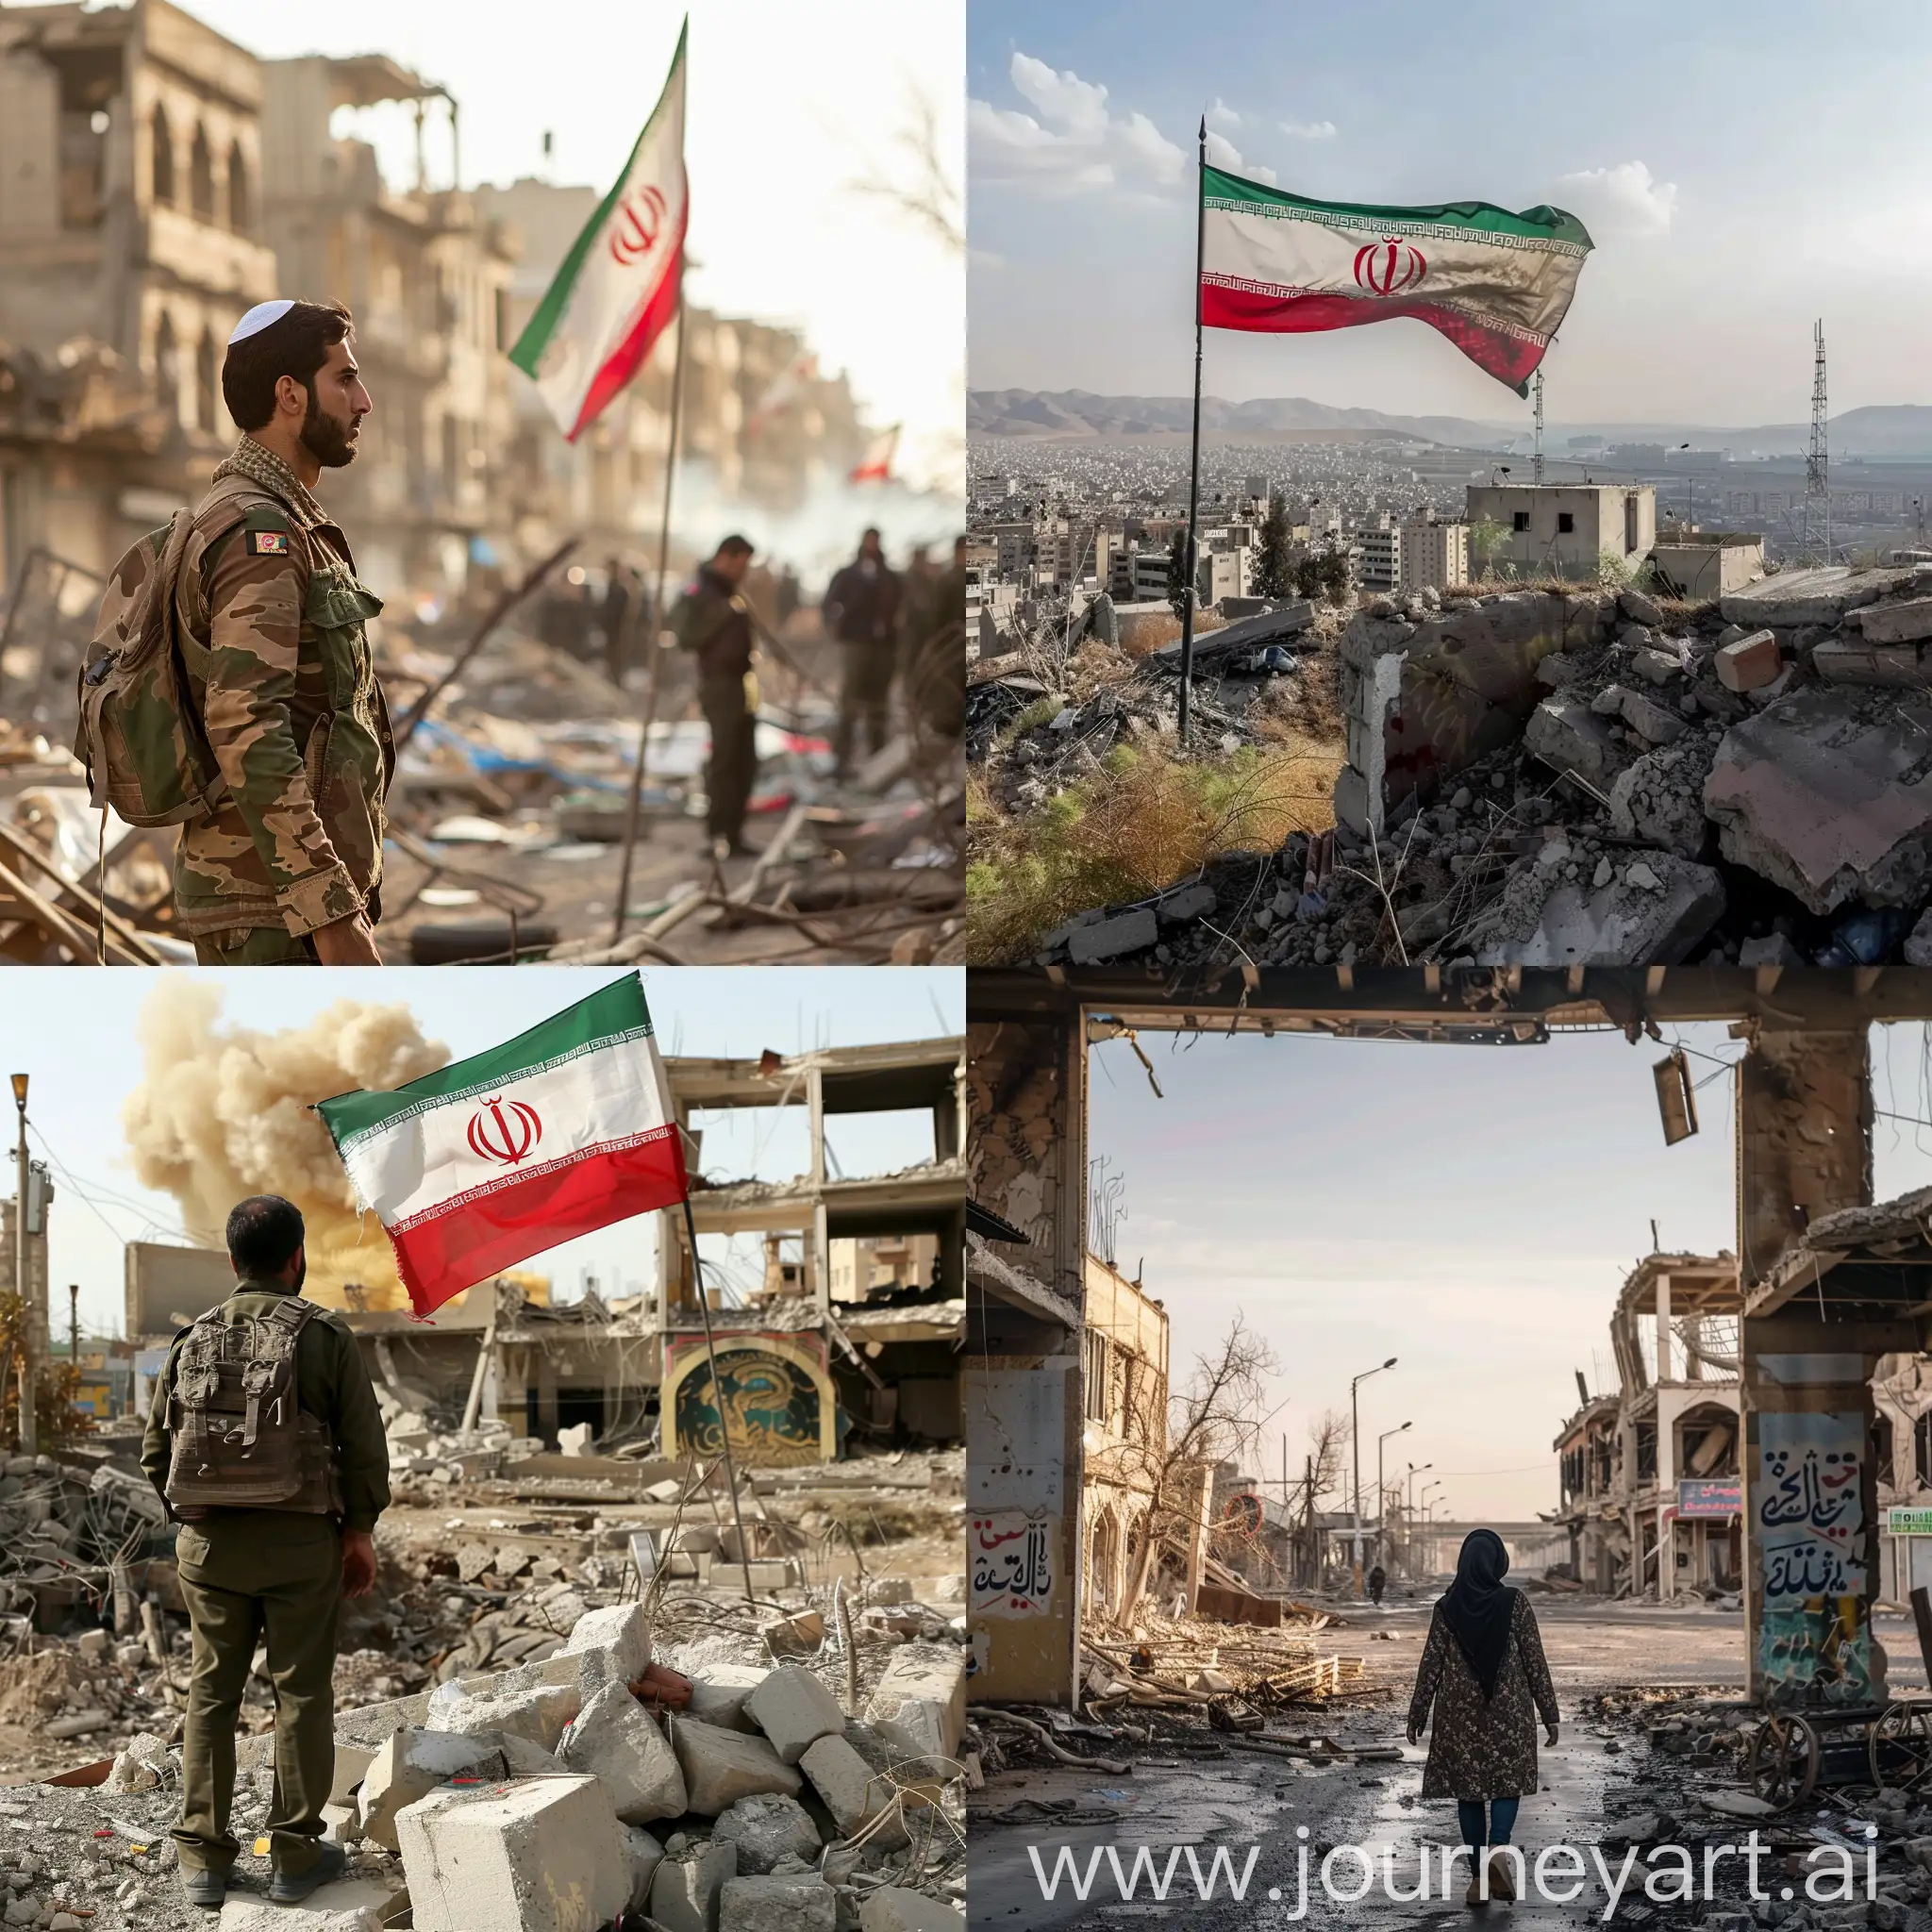 PostWar-Iran-Rebuilding-Amidst-Destruction